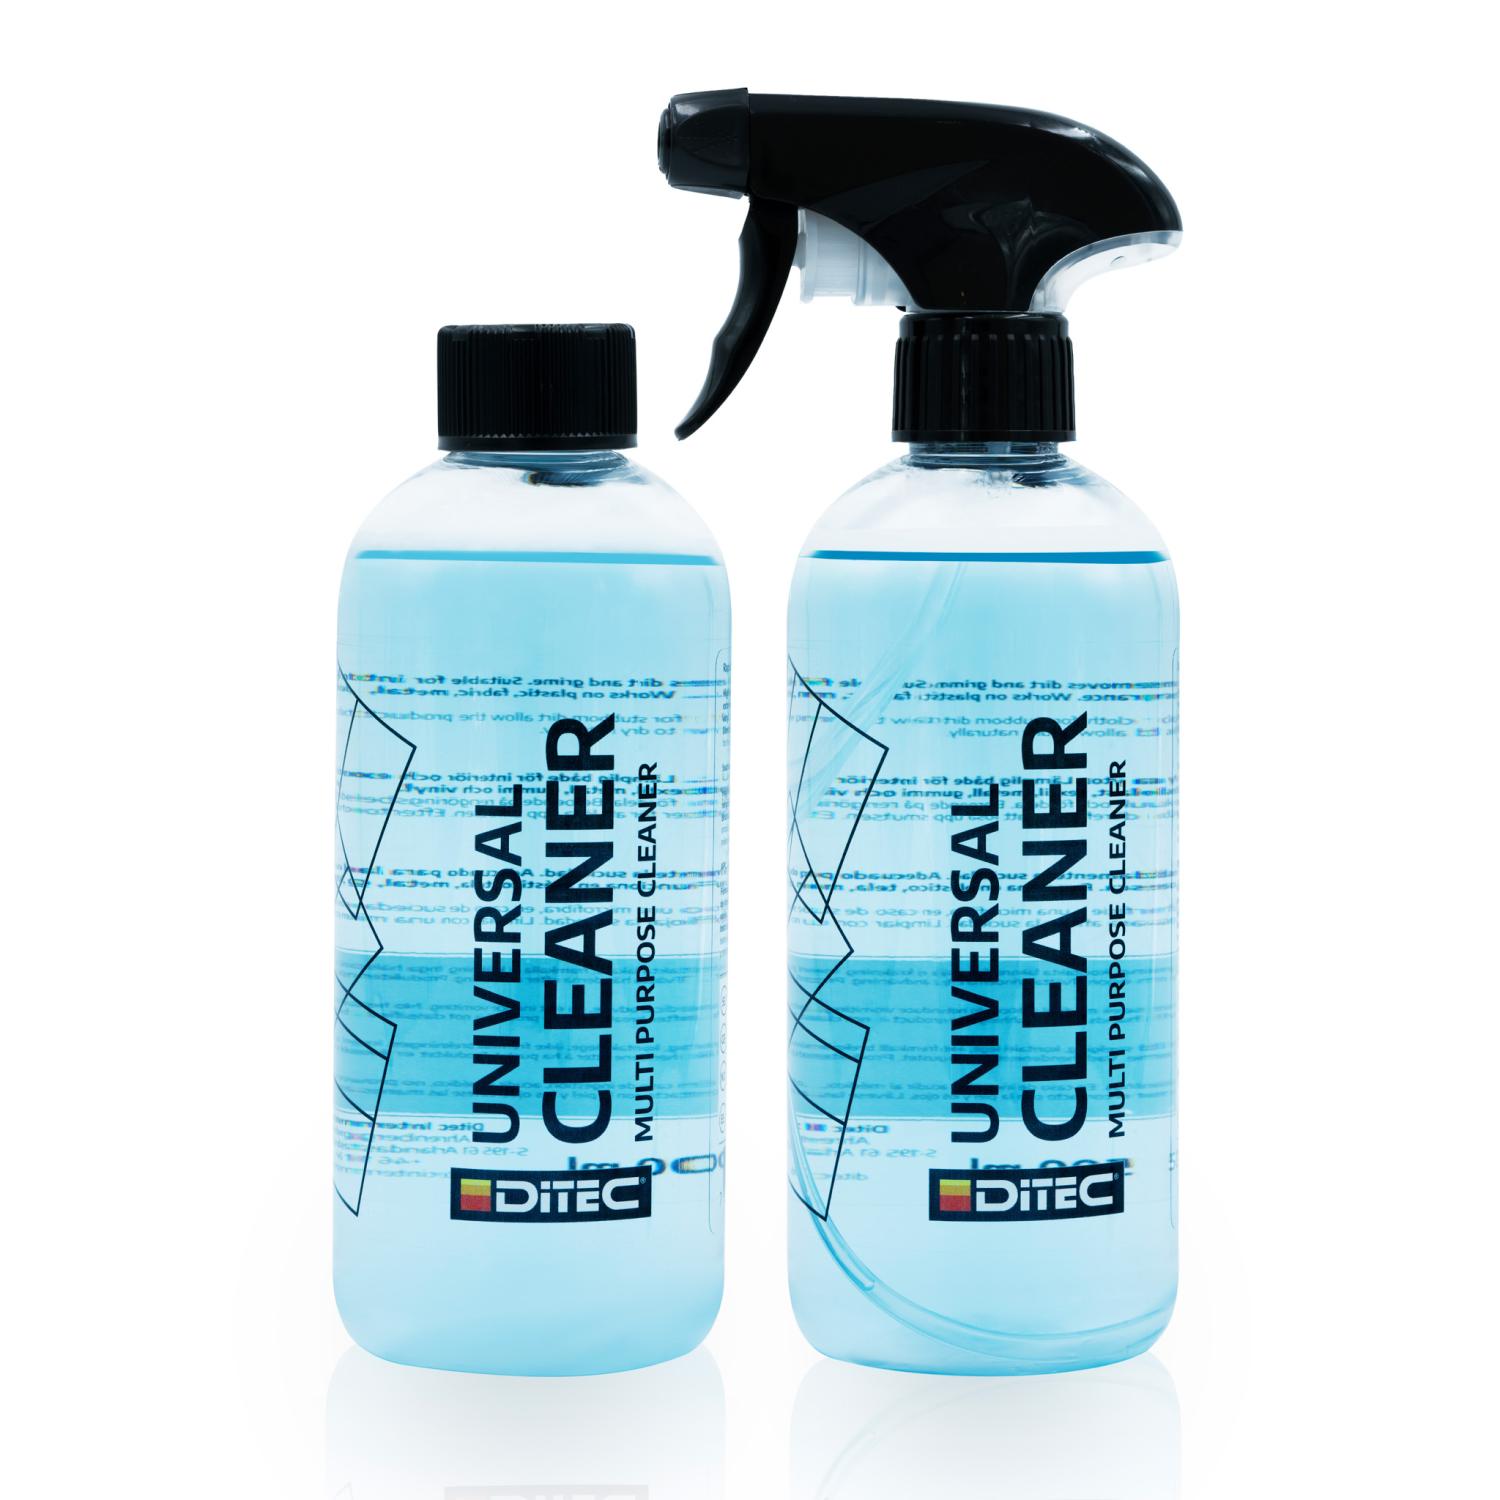 DITEC Universal Cleaner 500 ml. (1 Box = 9 Bottles)